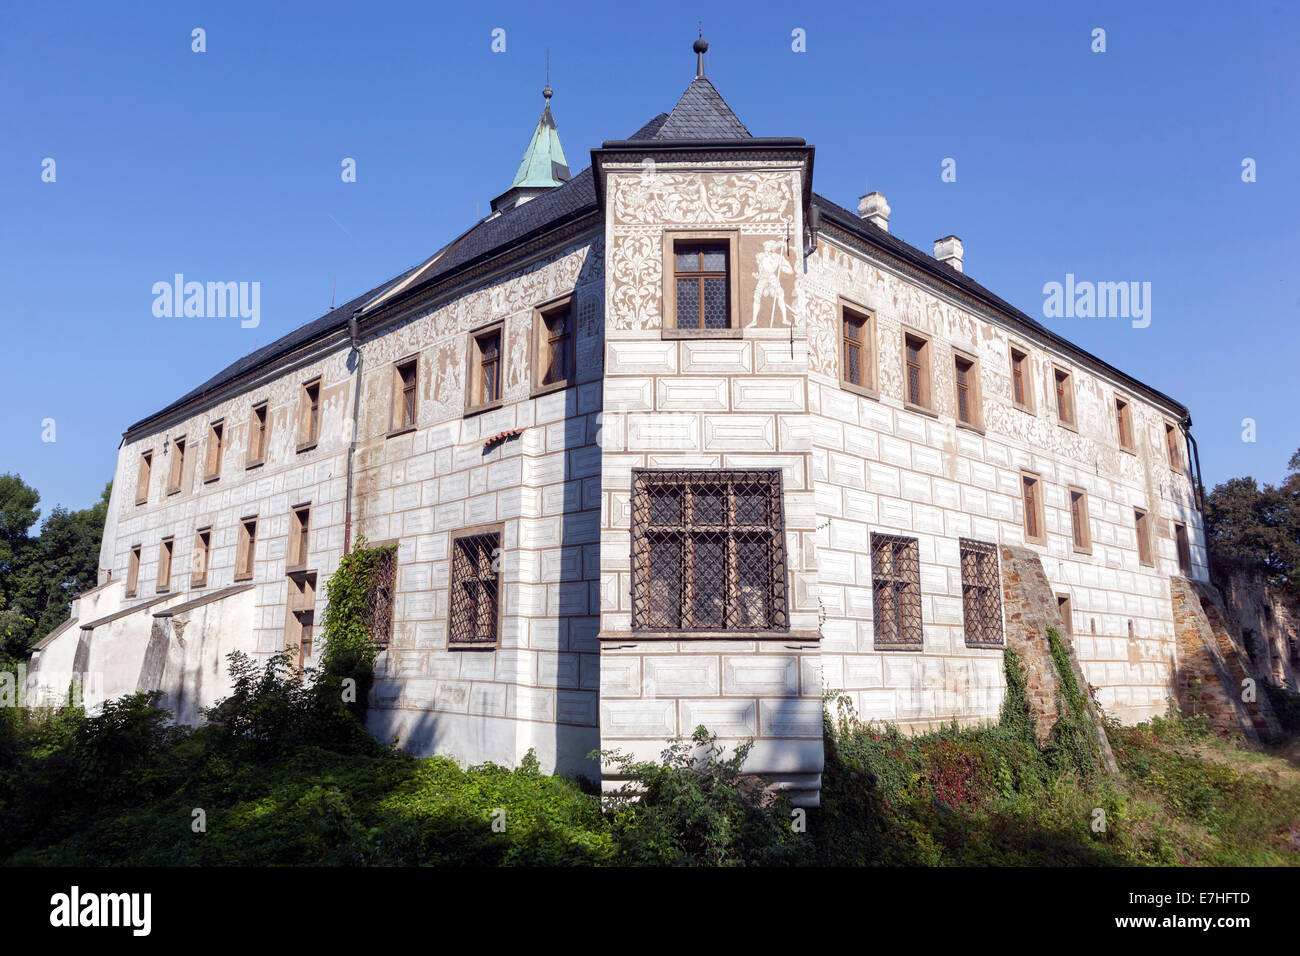 Château Renaissance de Prerov nad Labem, République Tchèque, Europe Banque D'Images